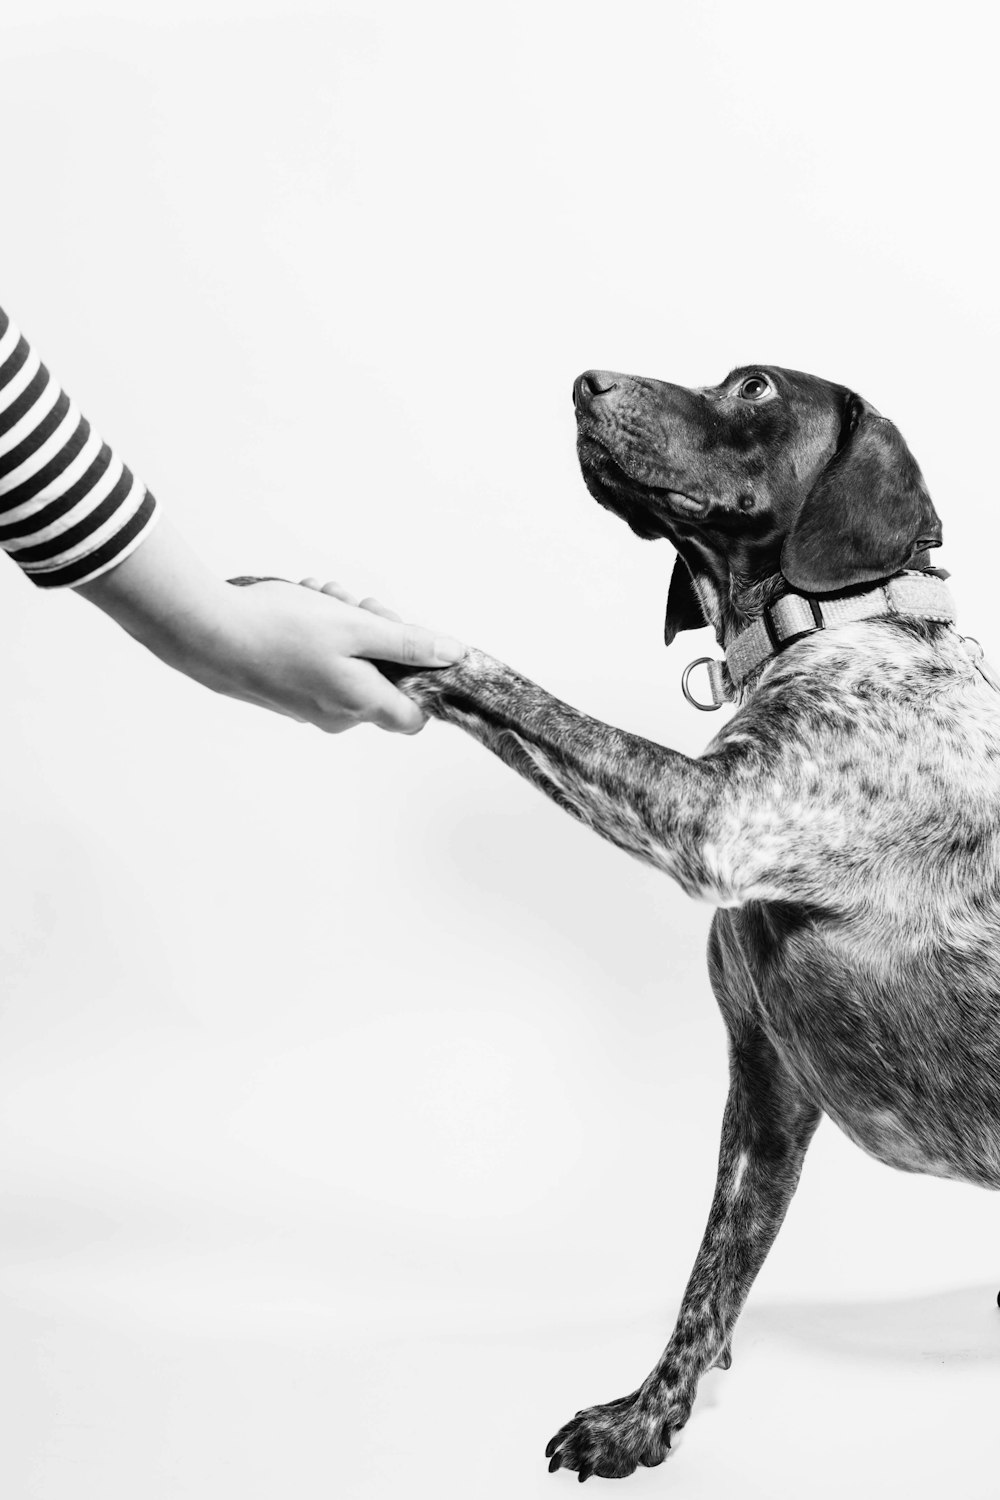 手をつなぐ人と犬のグレースケール写真